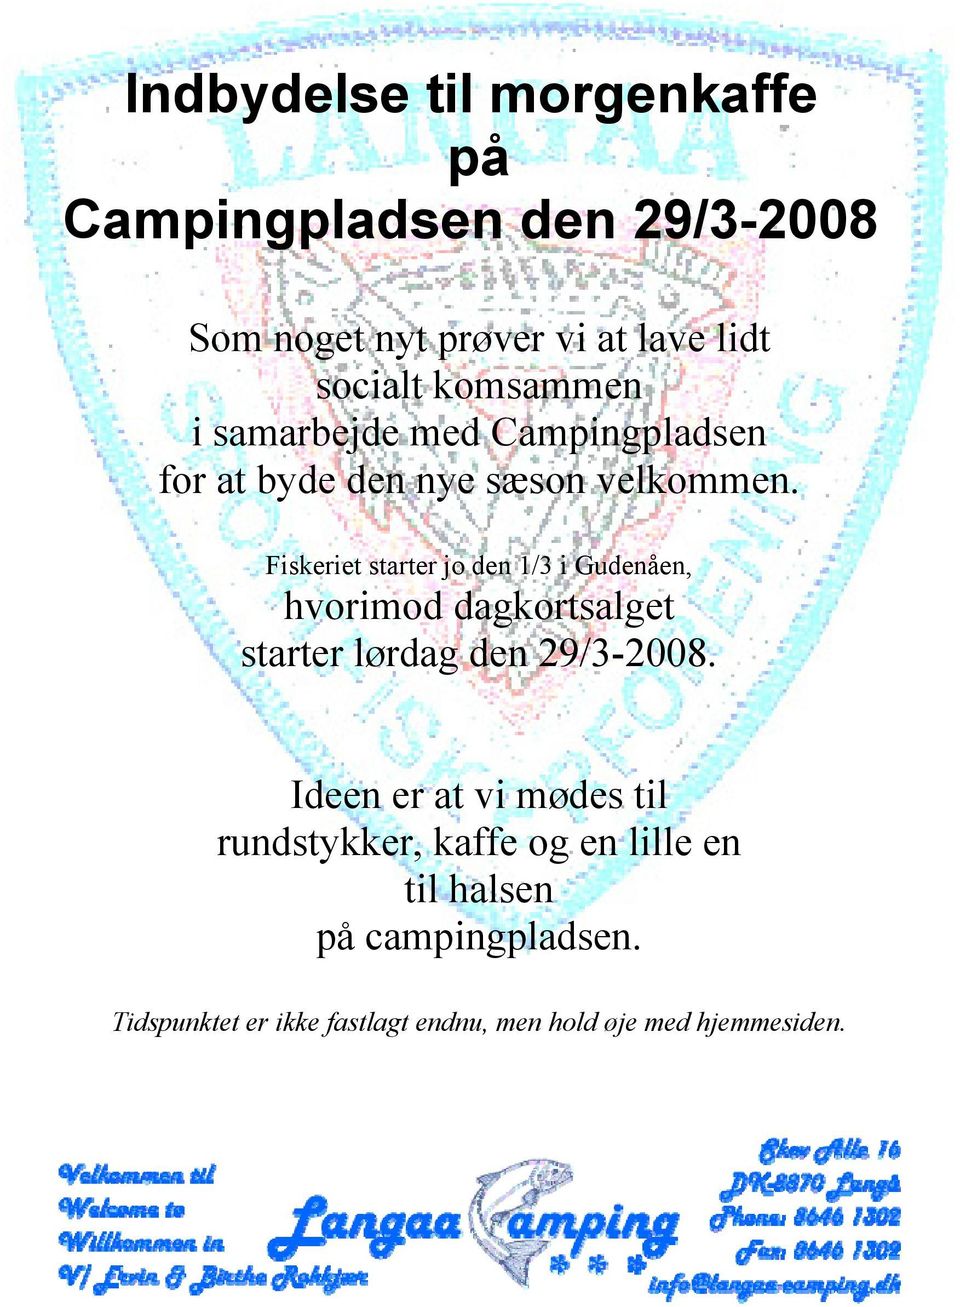 Fiskeriet starter jo den 1/3 i Gudenåen, hvorimod dagkortsalget starter lørdag den 29/3-2008.